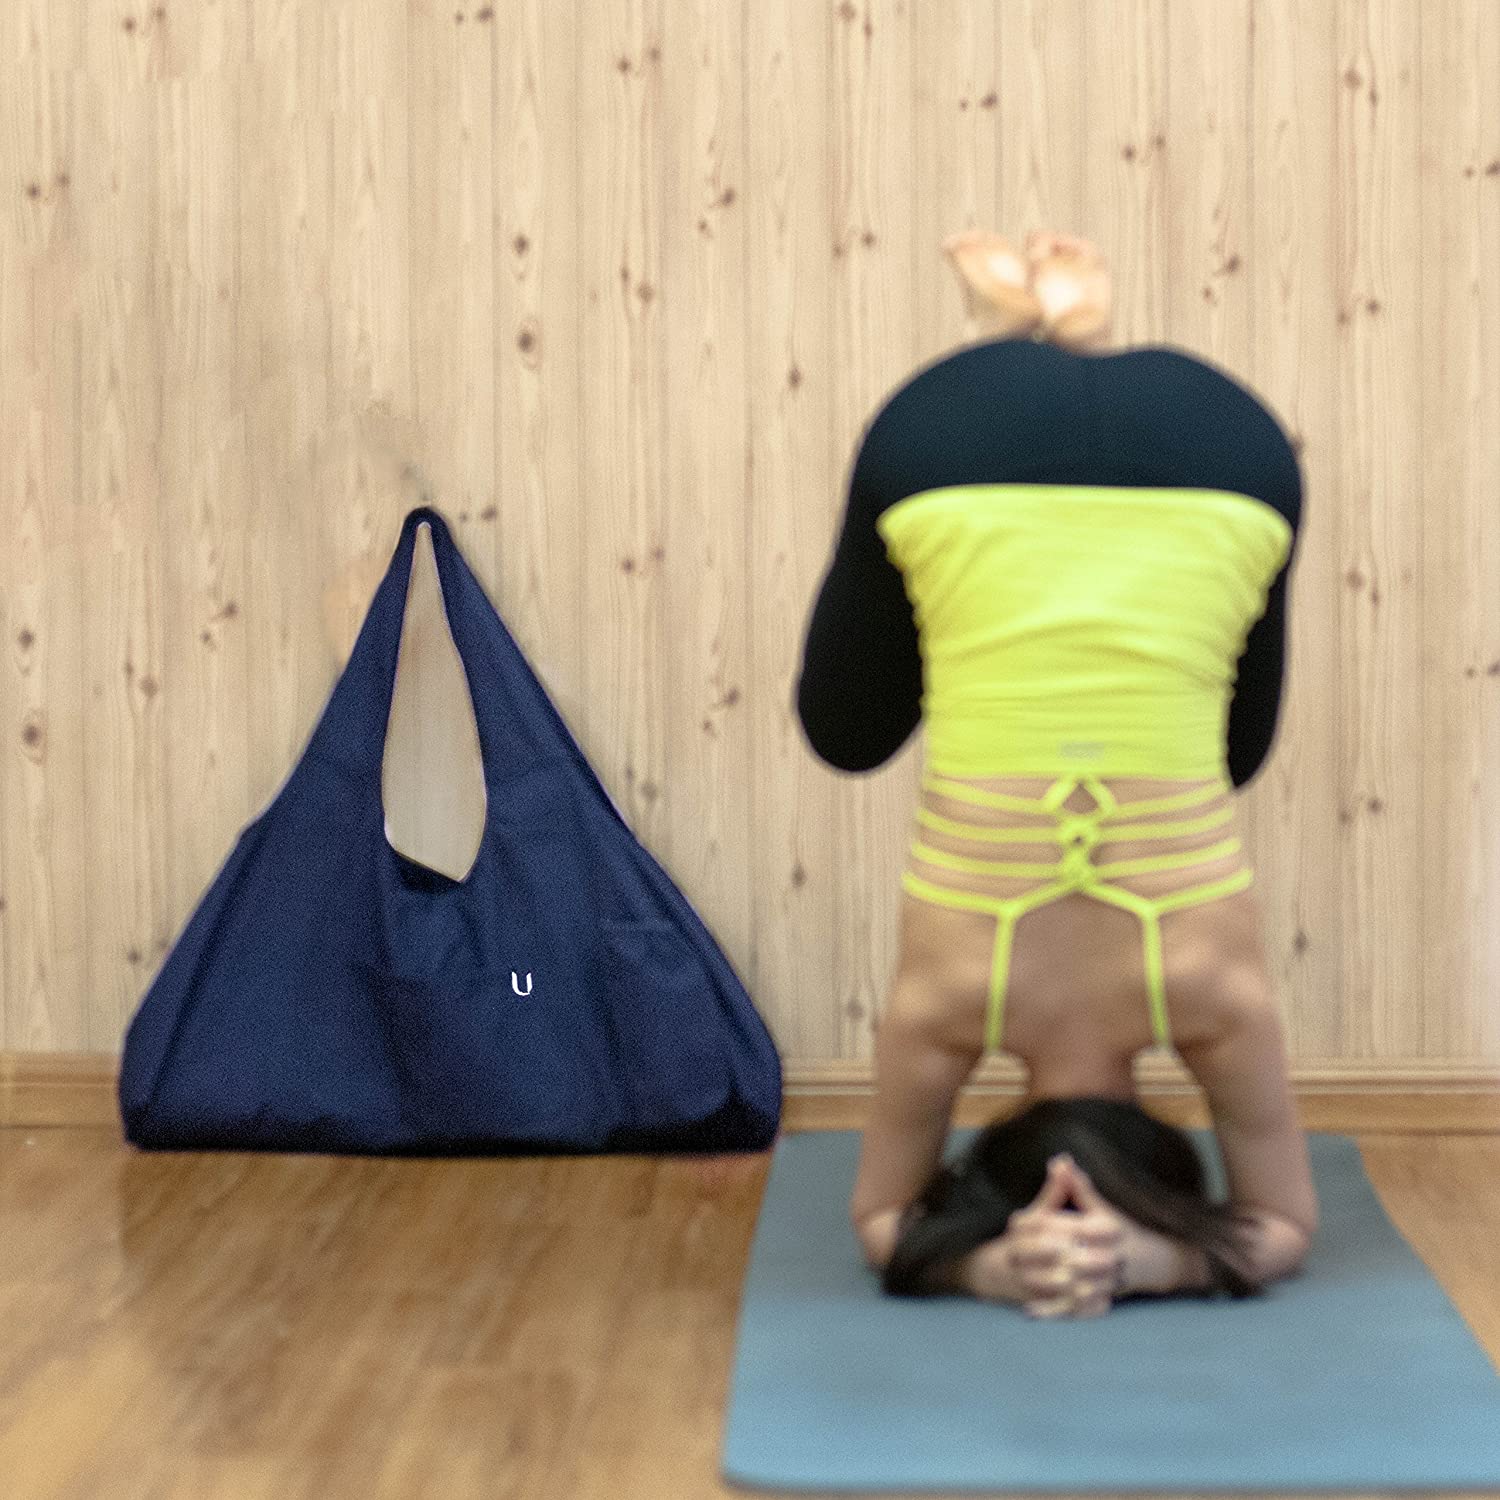 Foricx - Esterilla de yoga ecológica con TPE para yoga, pilates, gimna –